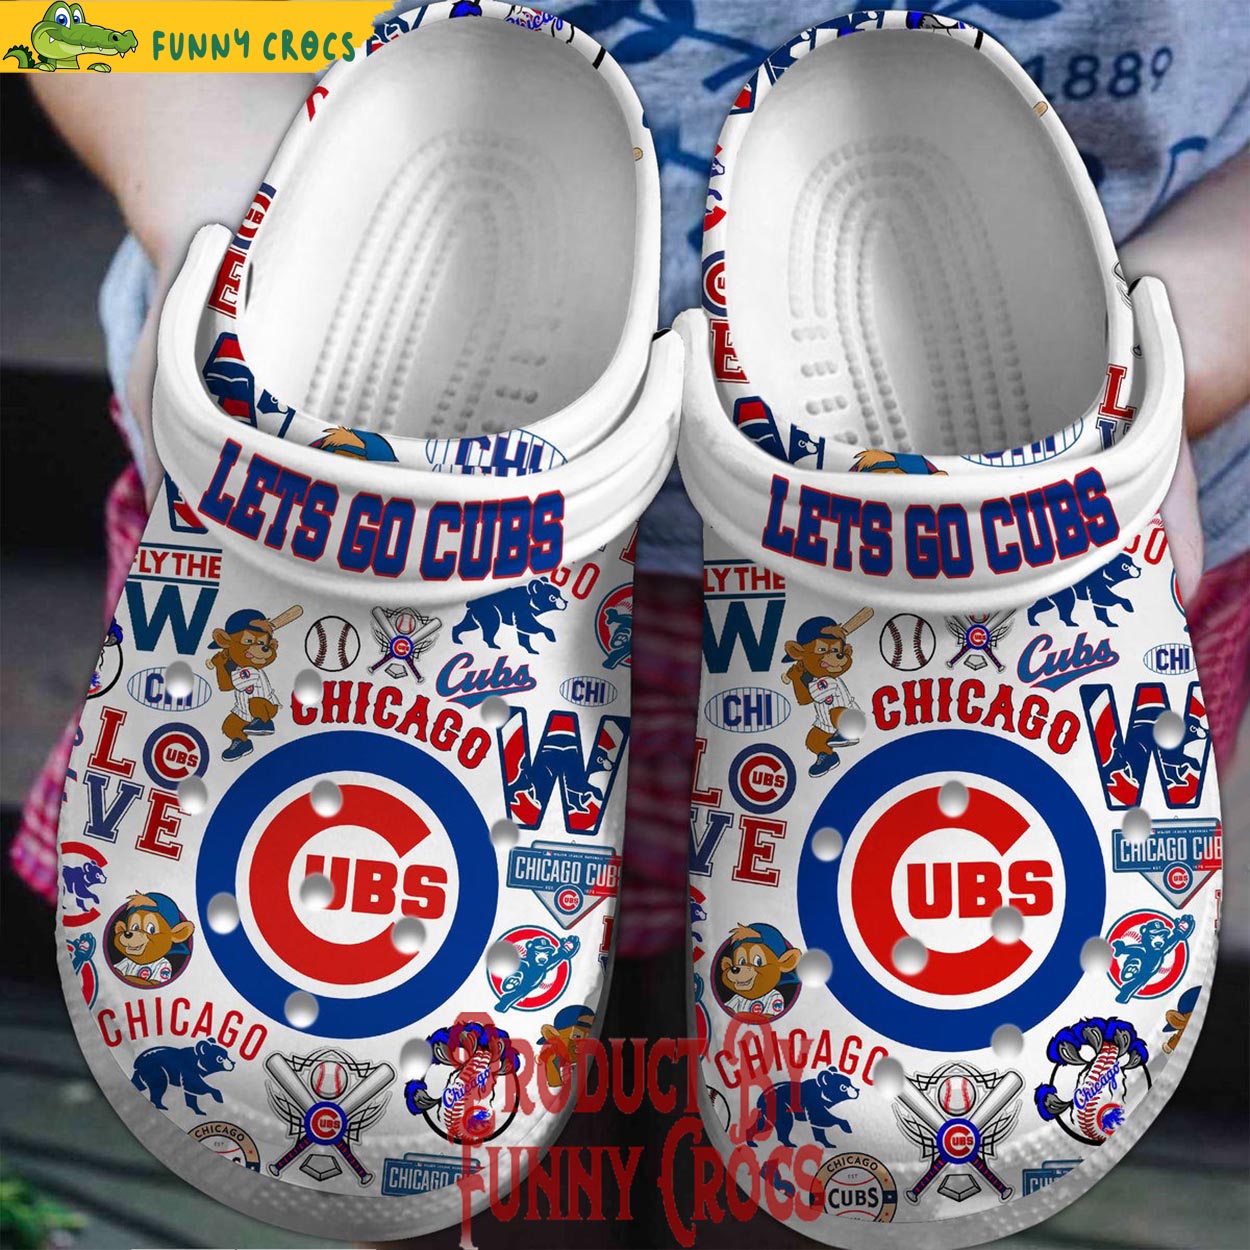 Let's Go Cubs Chicago Cubs Crocs